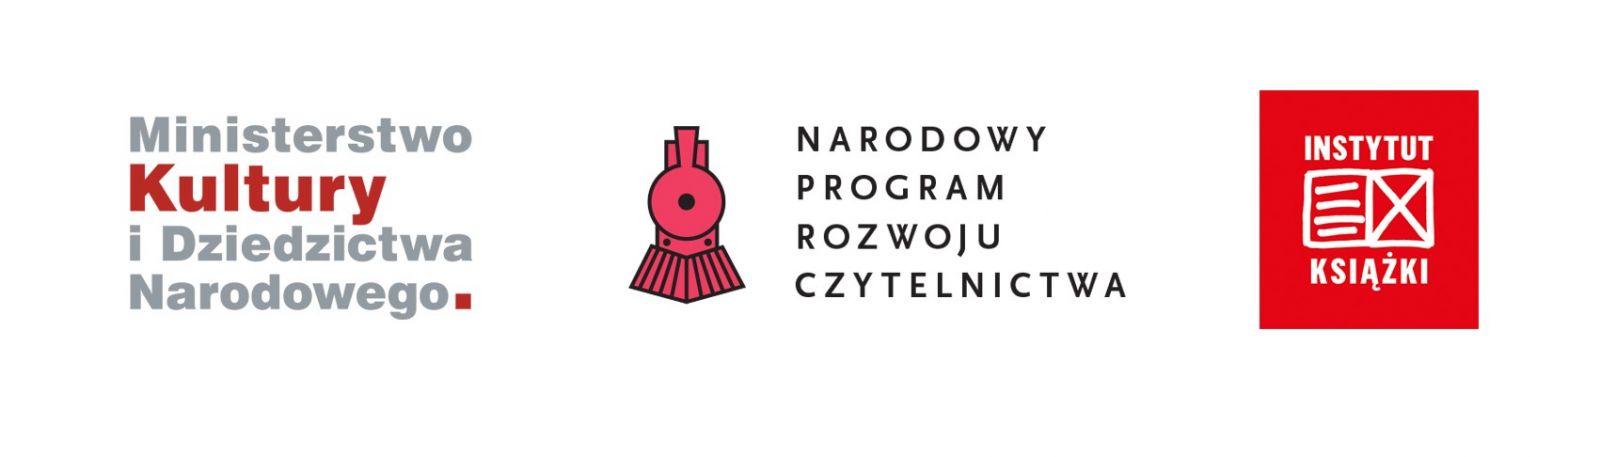 Logo Ministerstwo Kultury i Dziedzictwa narodowego, logo Narodowy Program Rozwoju Czytelnictwa, logo Instytut Książki